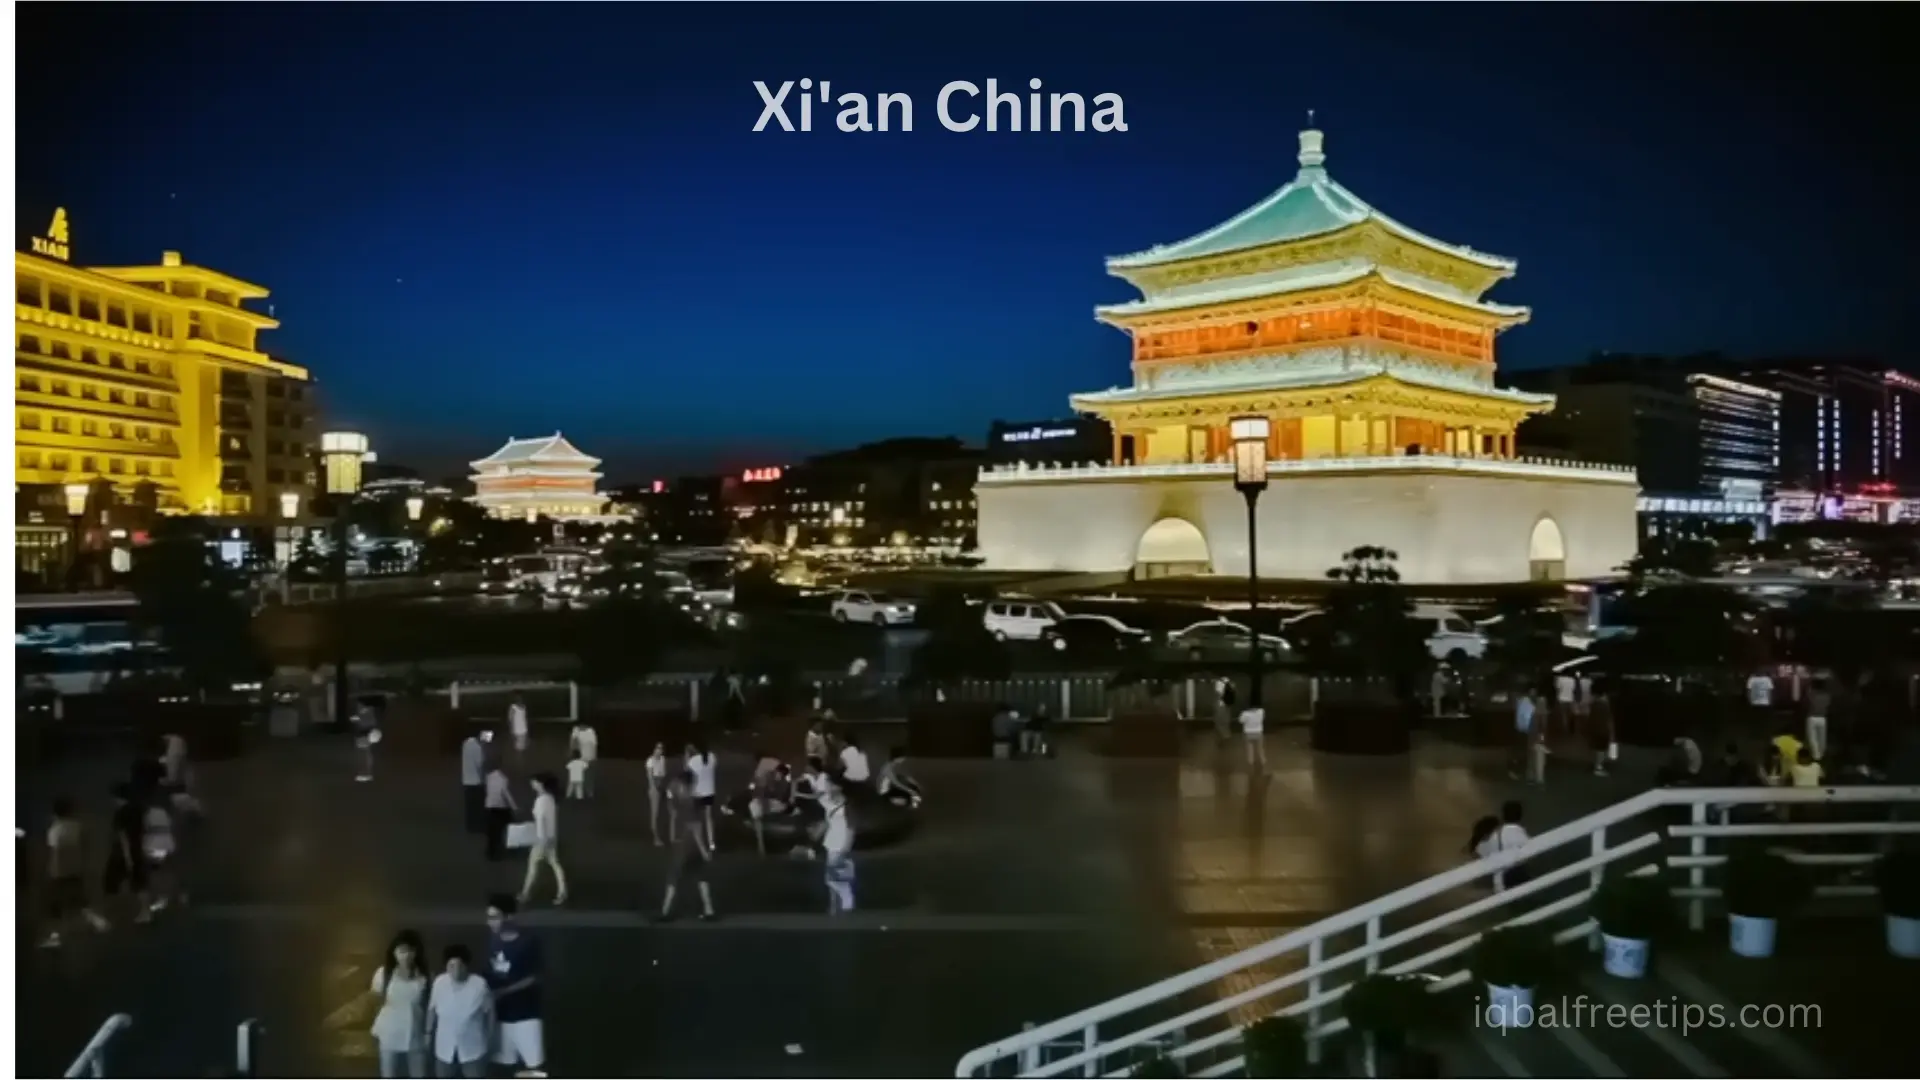 Xi'an China